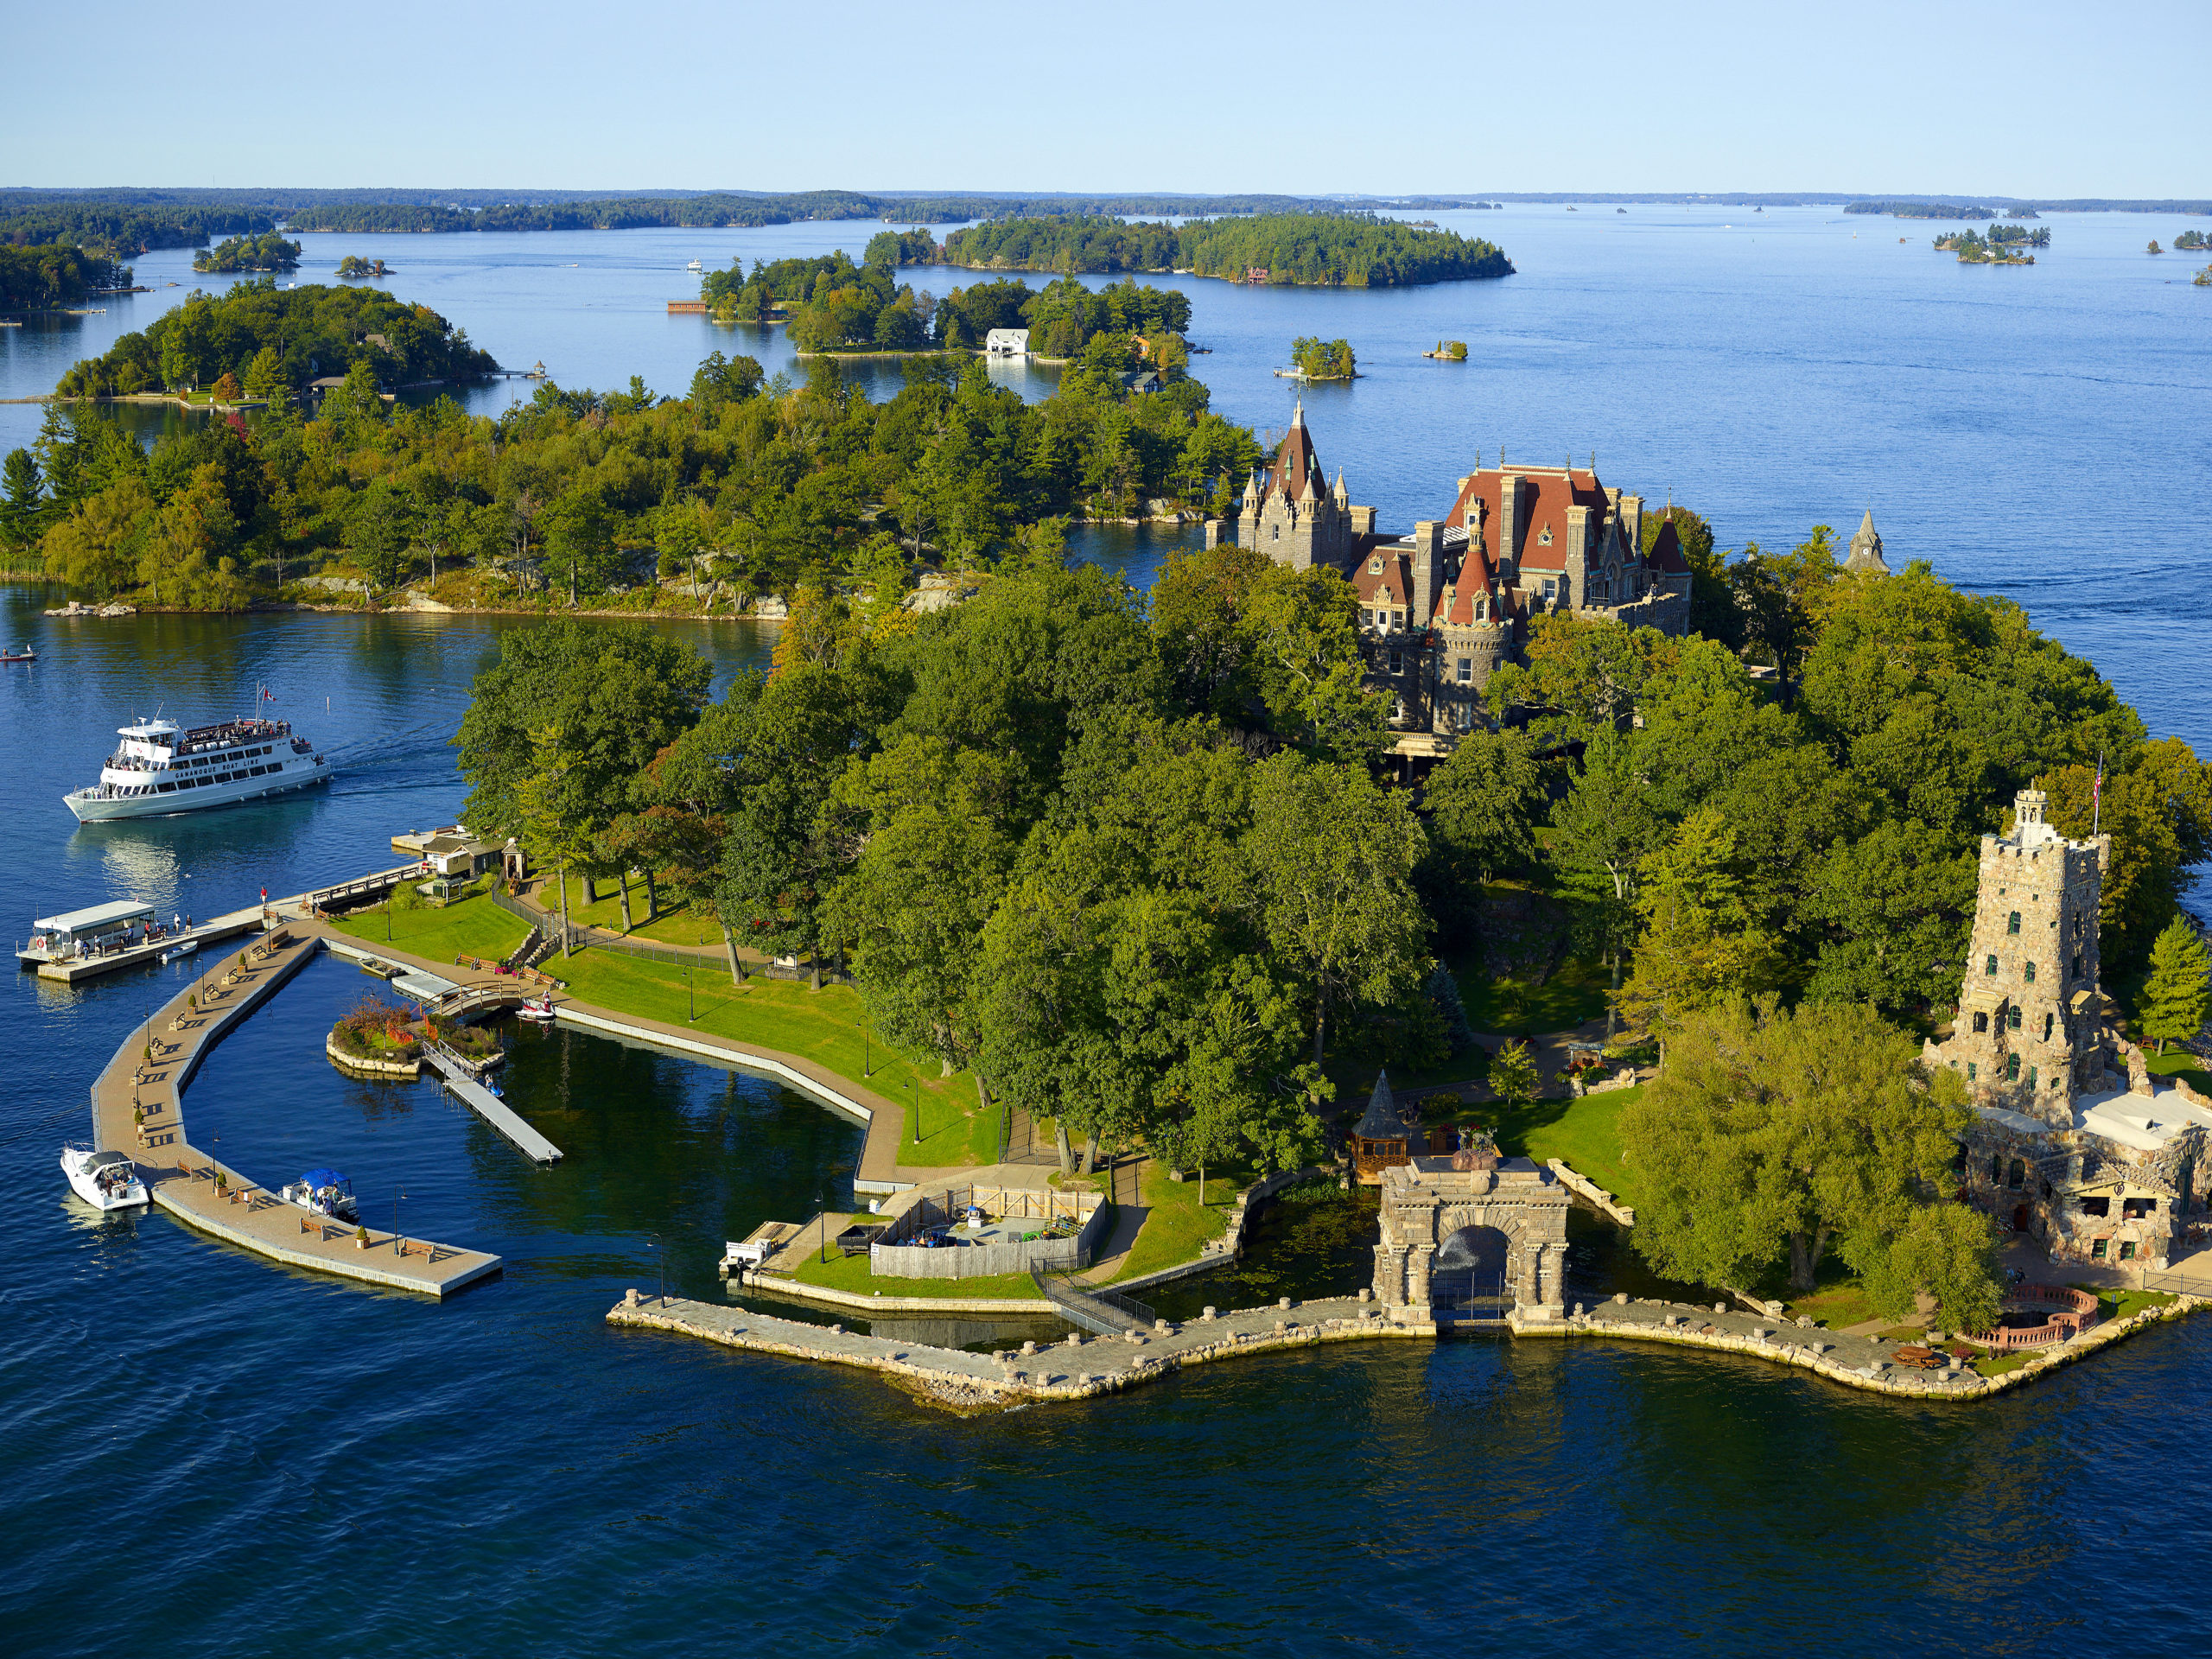 1000 islands tour boldt castle